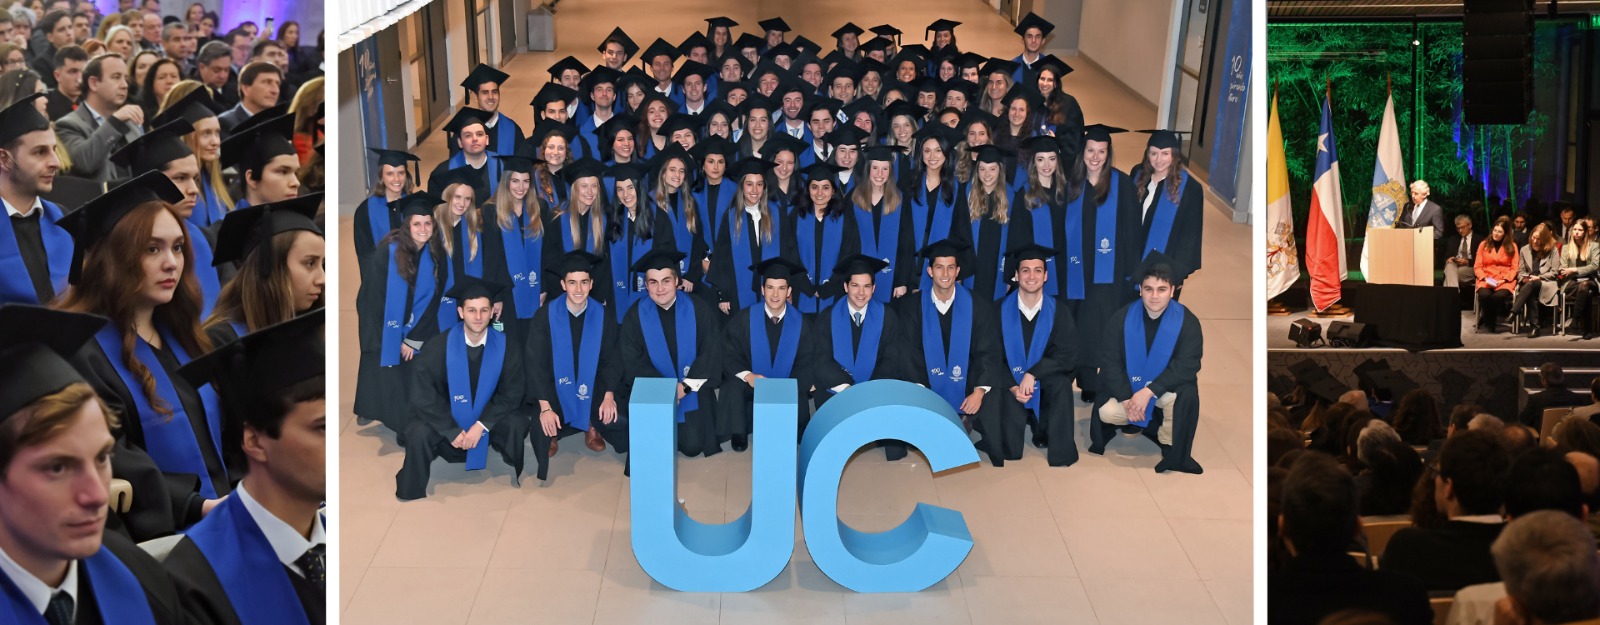 Facultad de Economía y Administración gradúa a 178 nuevos ingenieros comerciales UC